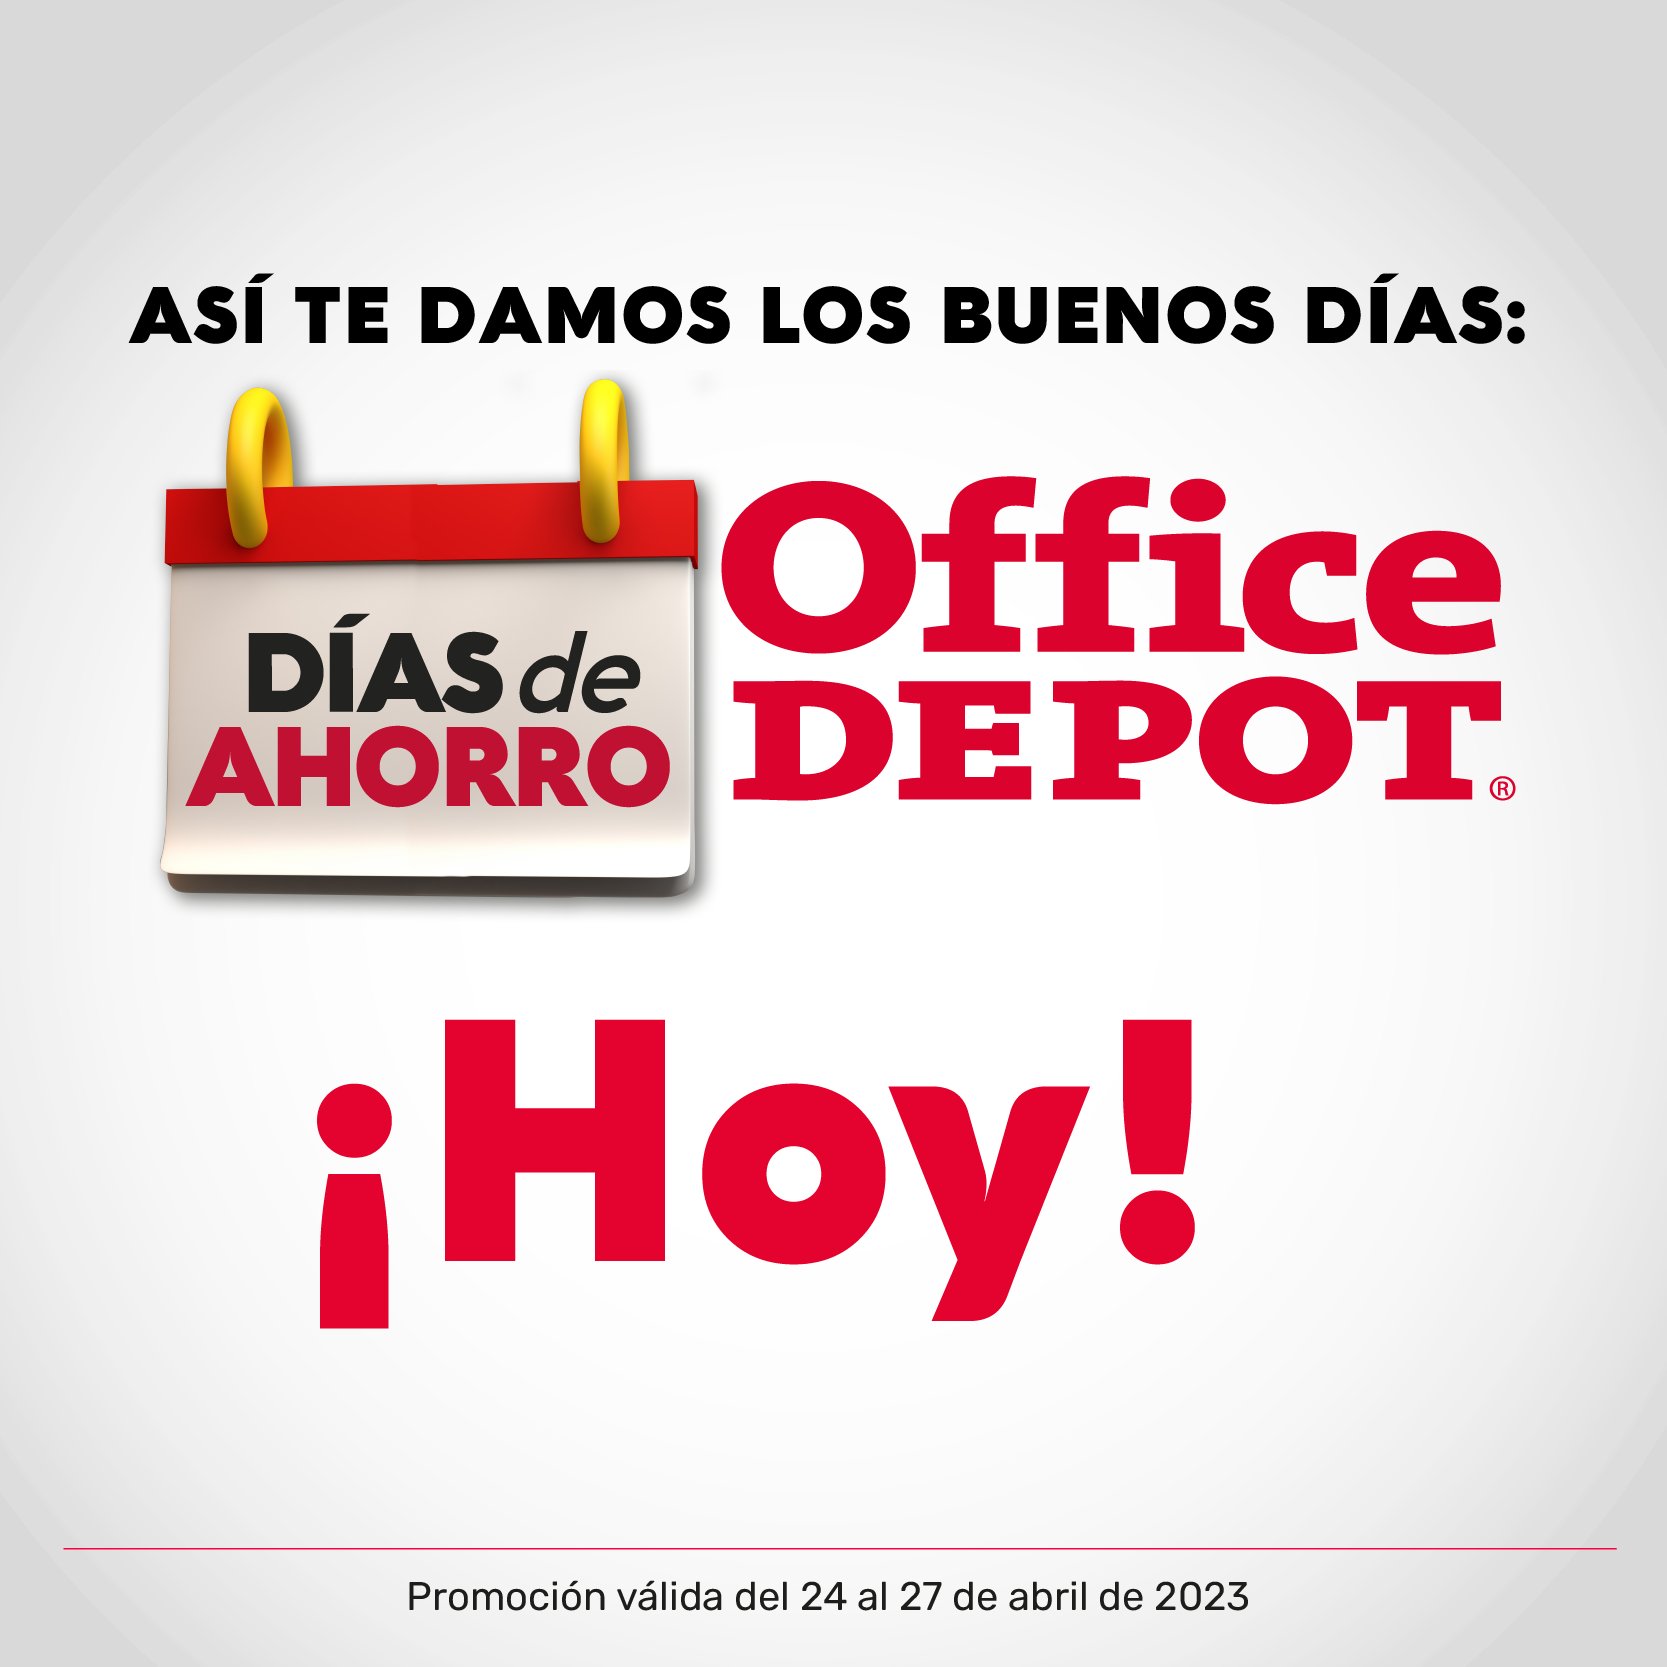 Office Depot Panamá (@OfficeDepotPa) / Twitter